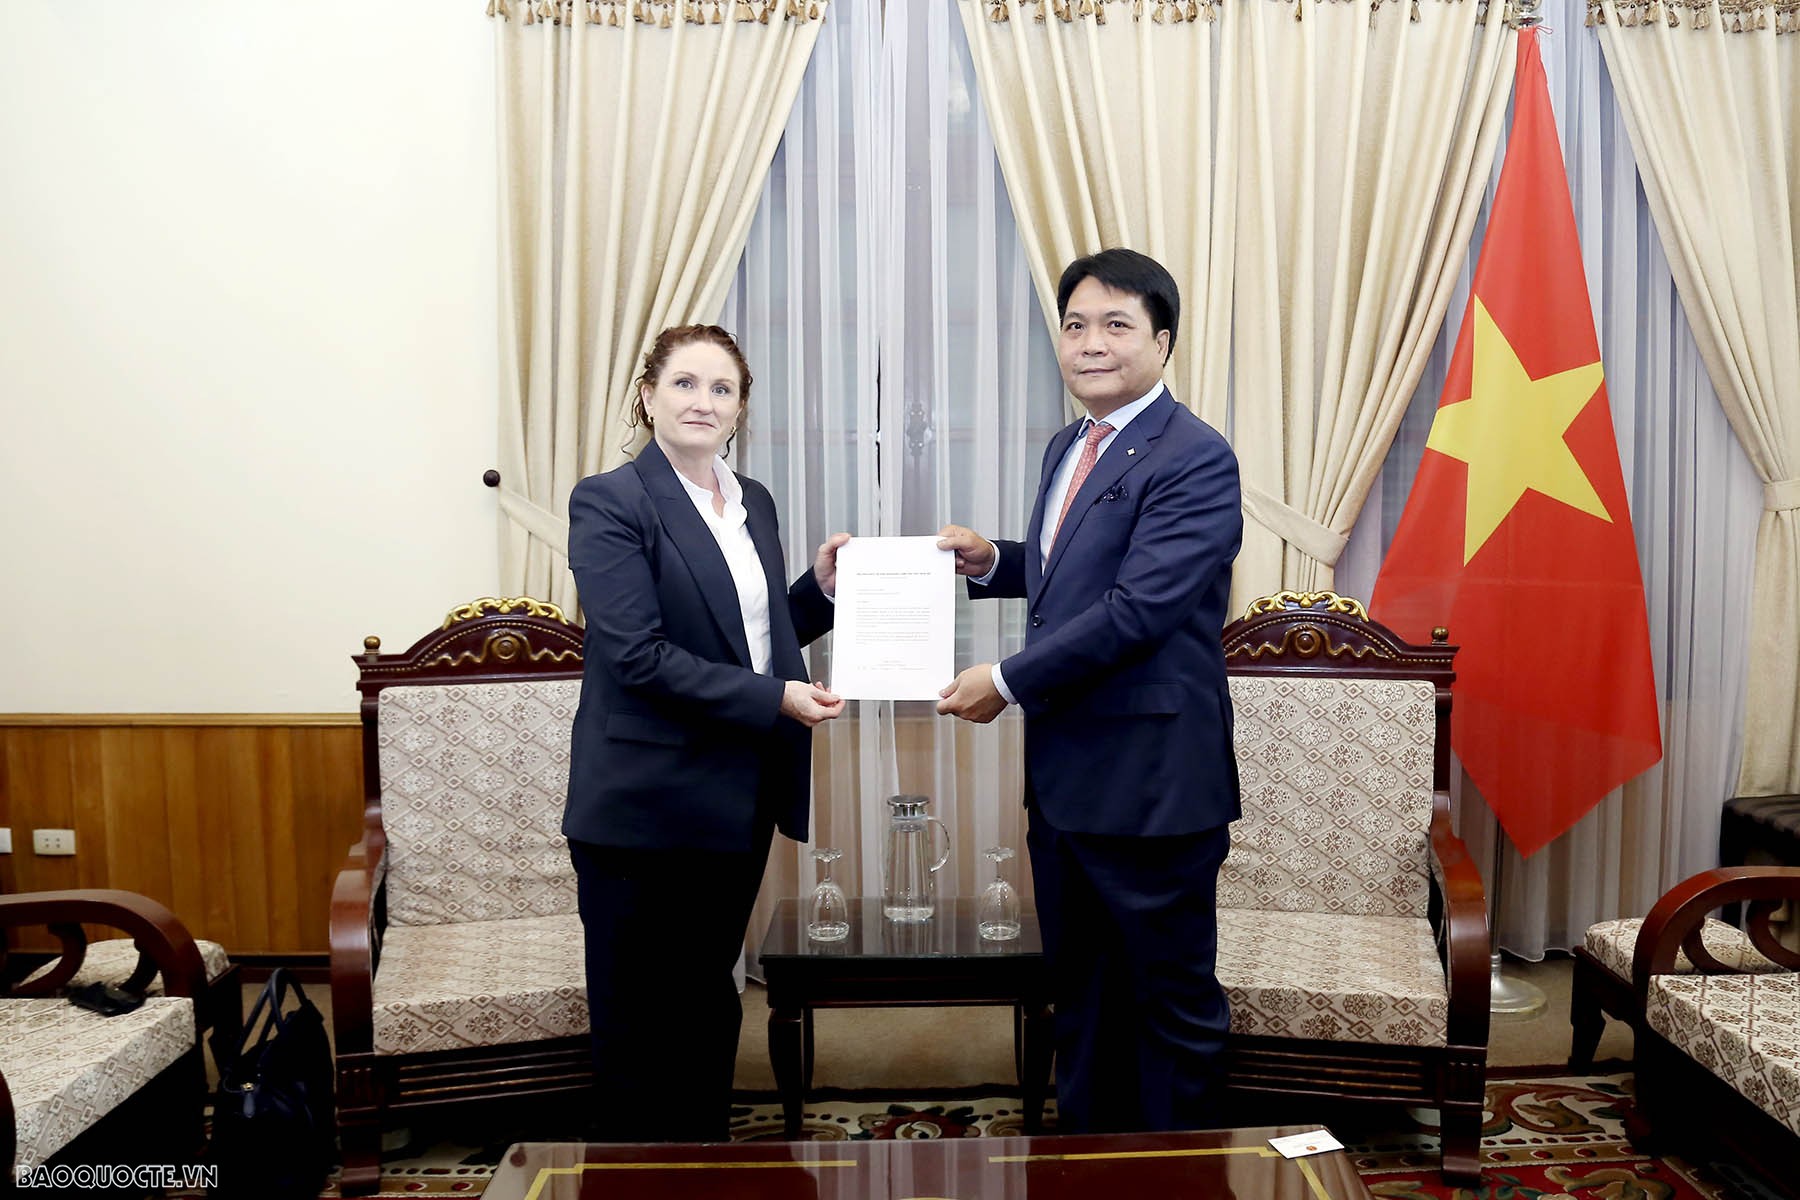 Bộ Ngoại giao tiếp nhận bản sao Thư ủy nhiệm bổ nhiệm Đại sứ New Zealand tại Việt Nam